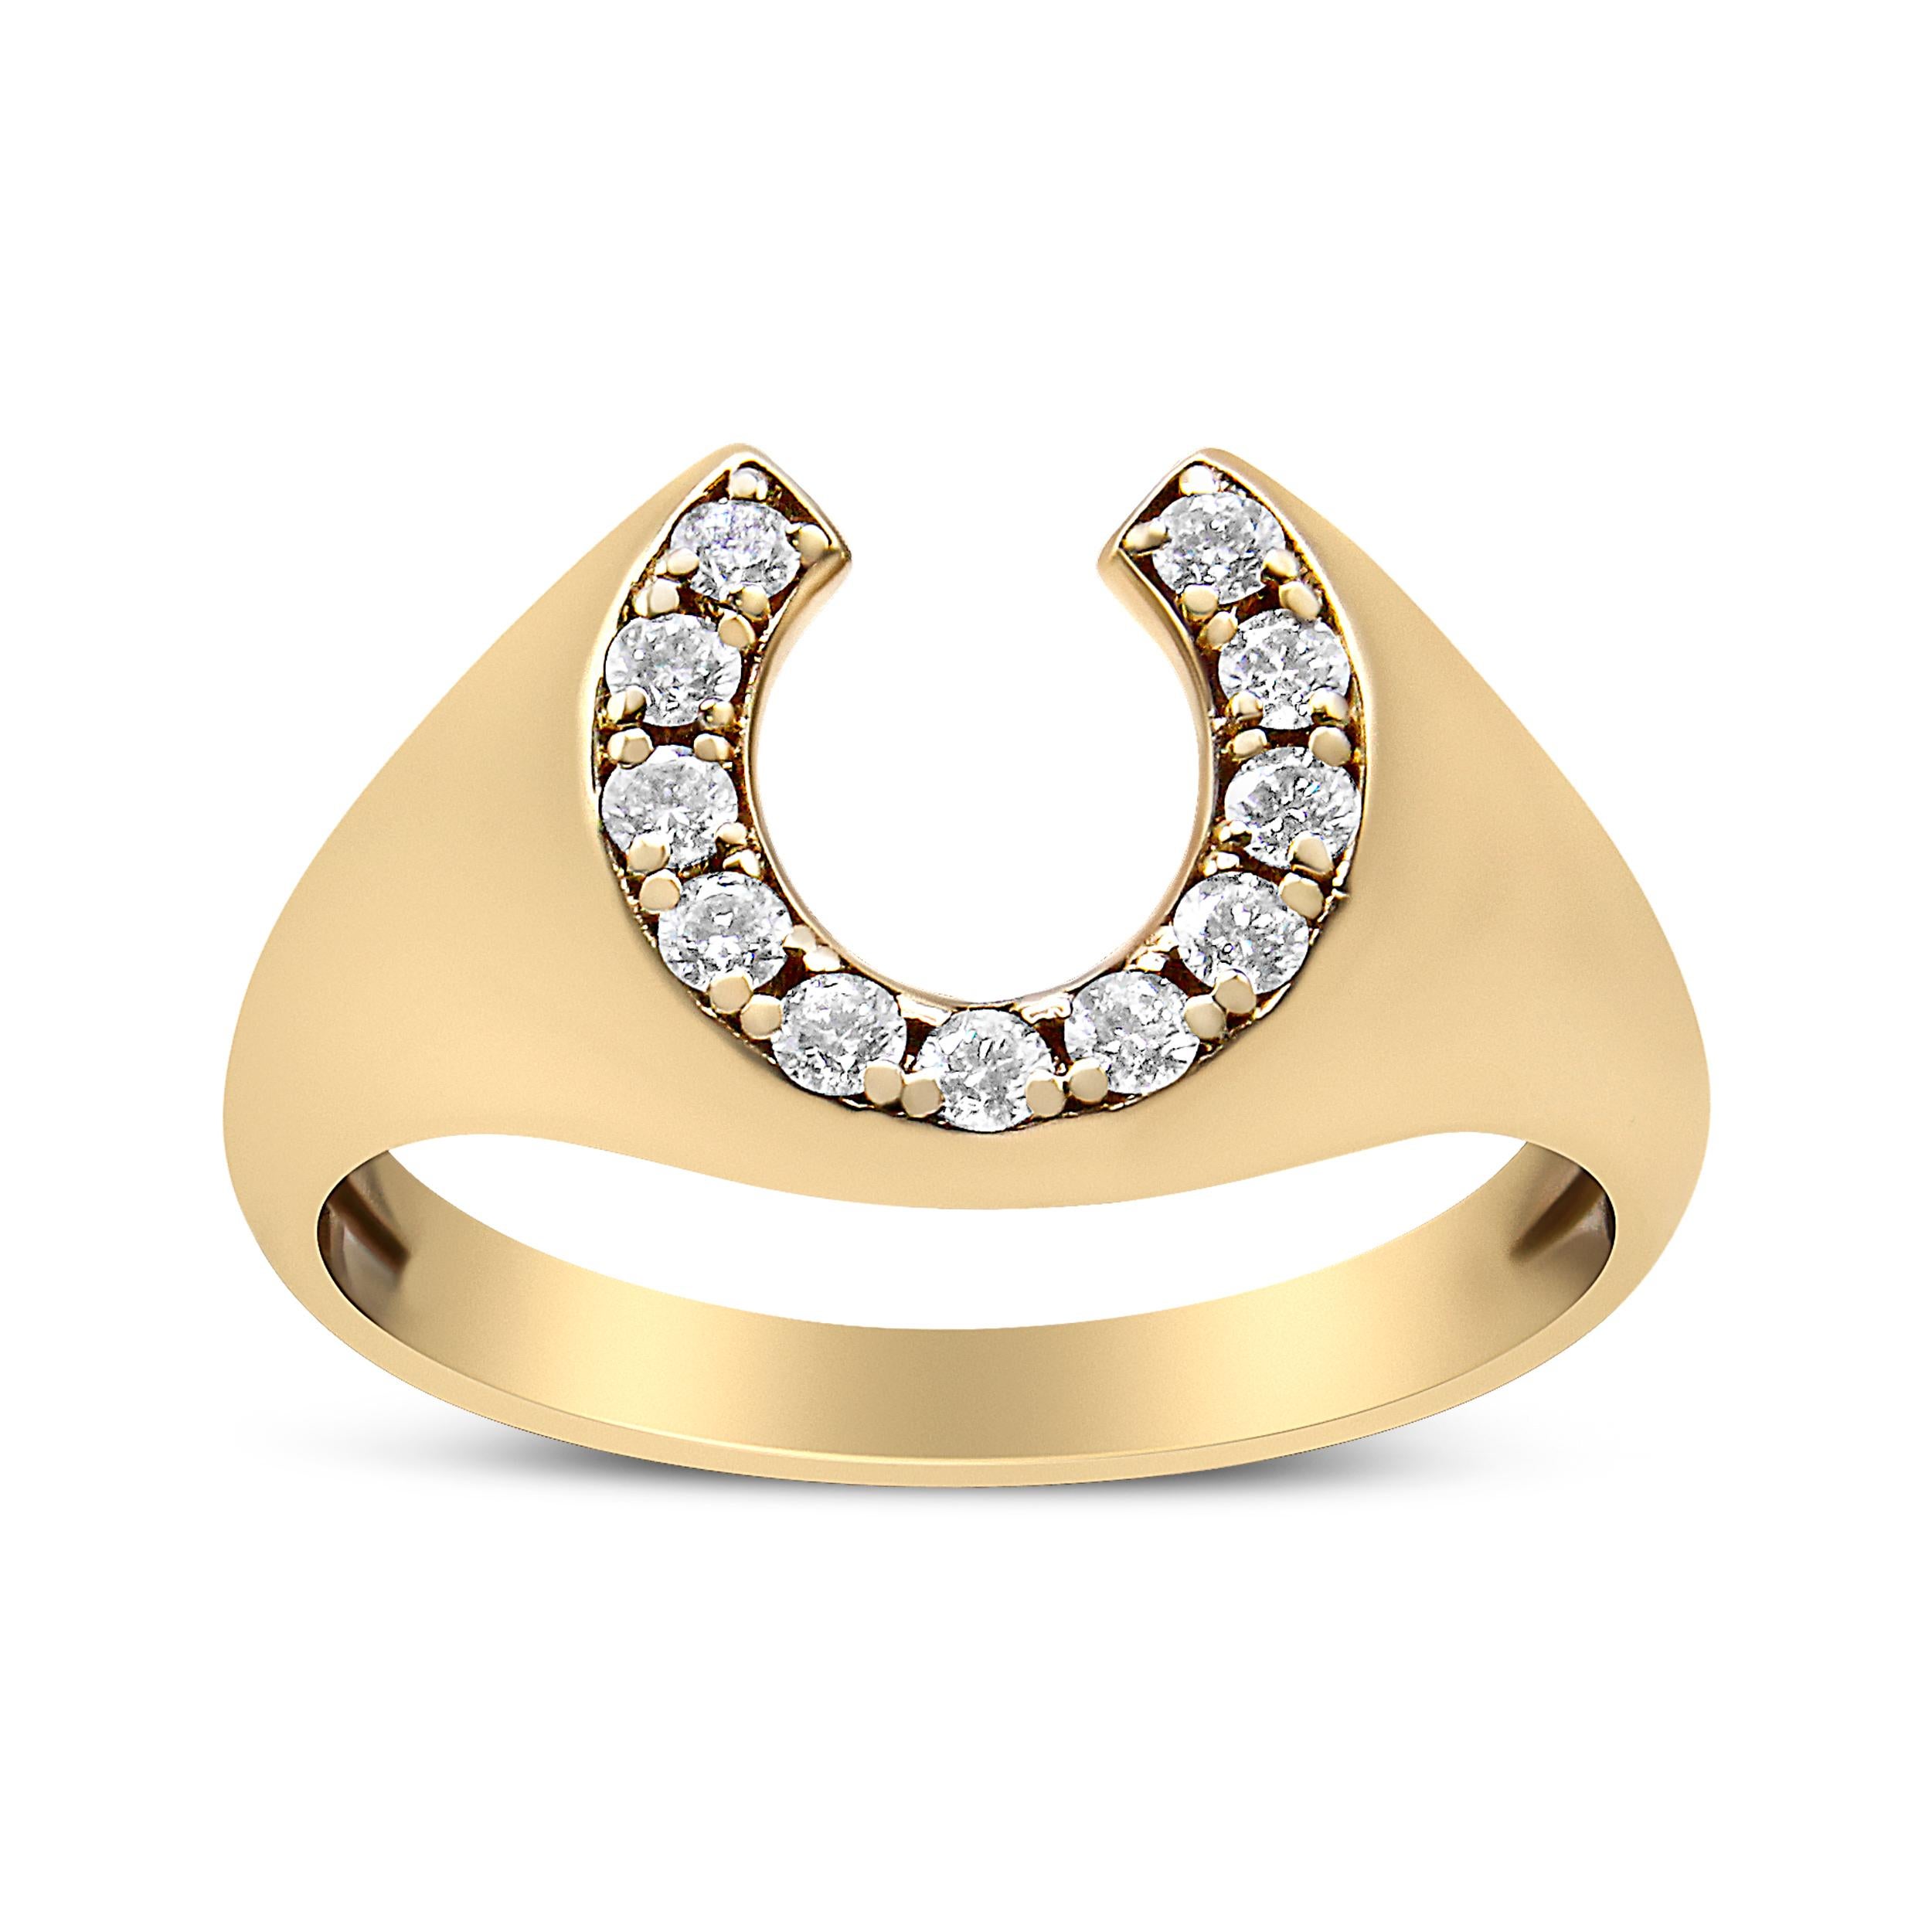 10k gold horseshoe ring